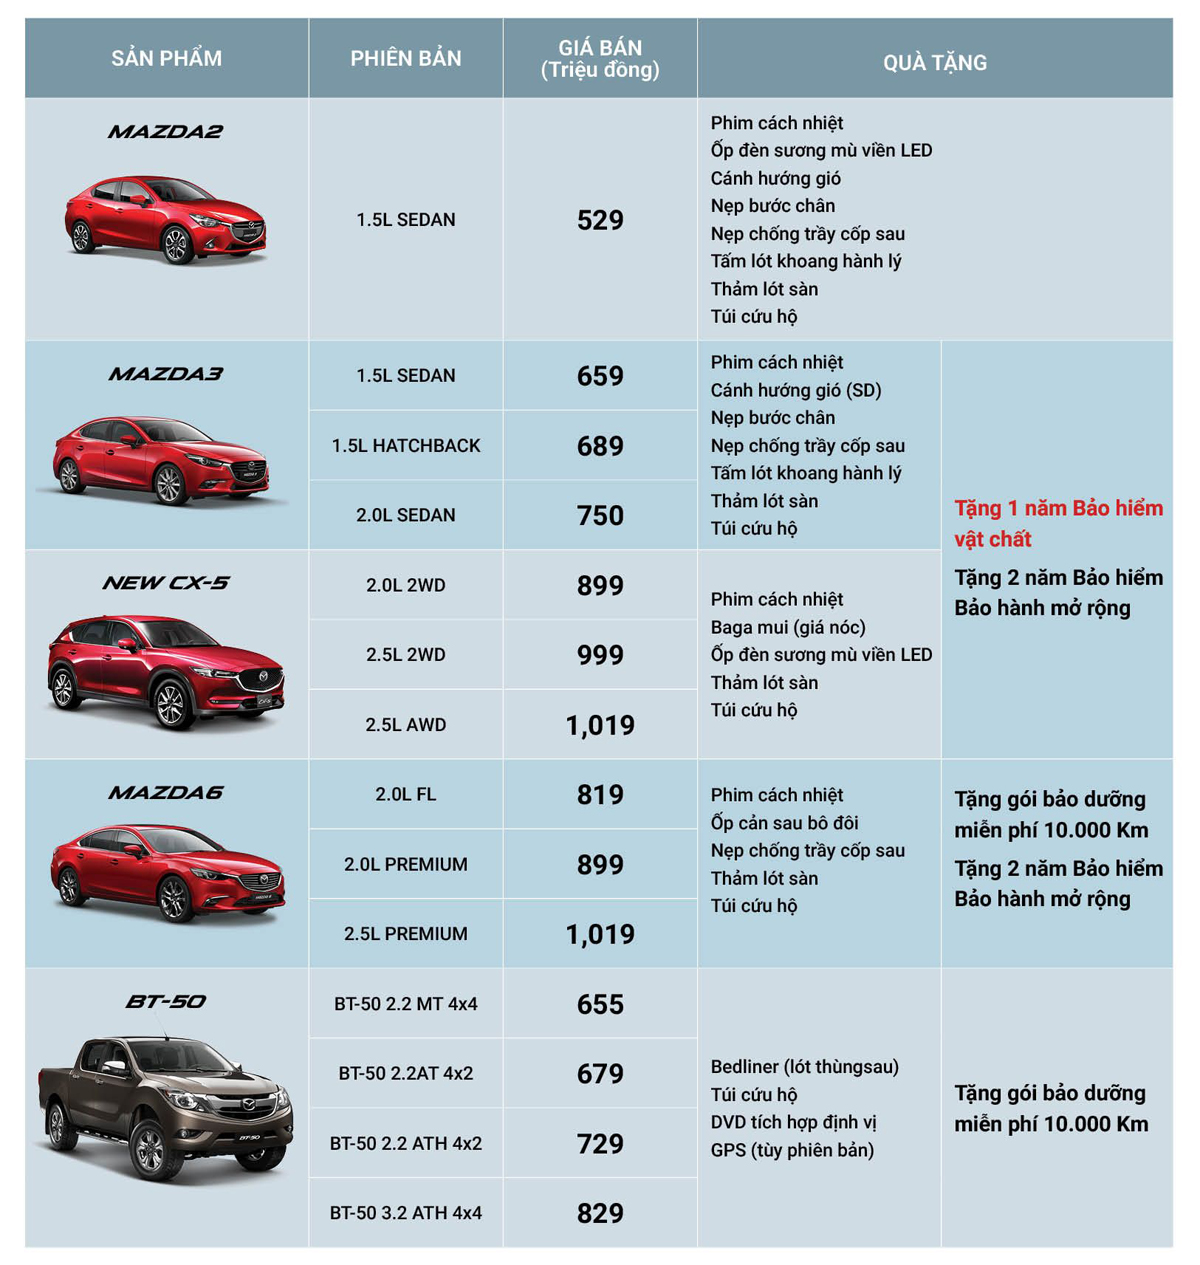 Bảng giá và quà tặng Mazda trong tháng 10.2018